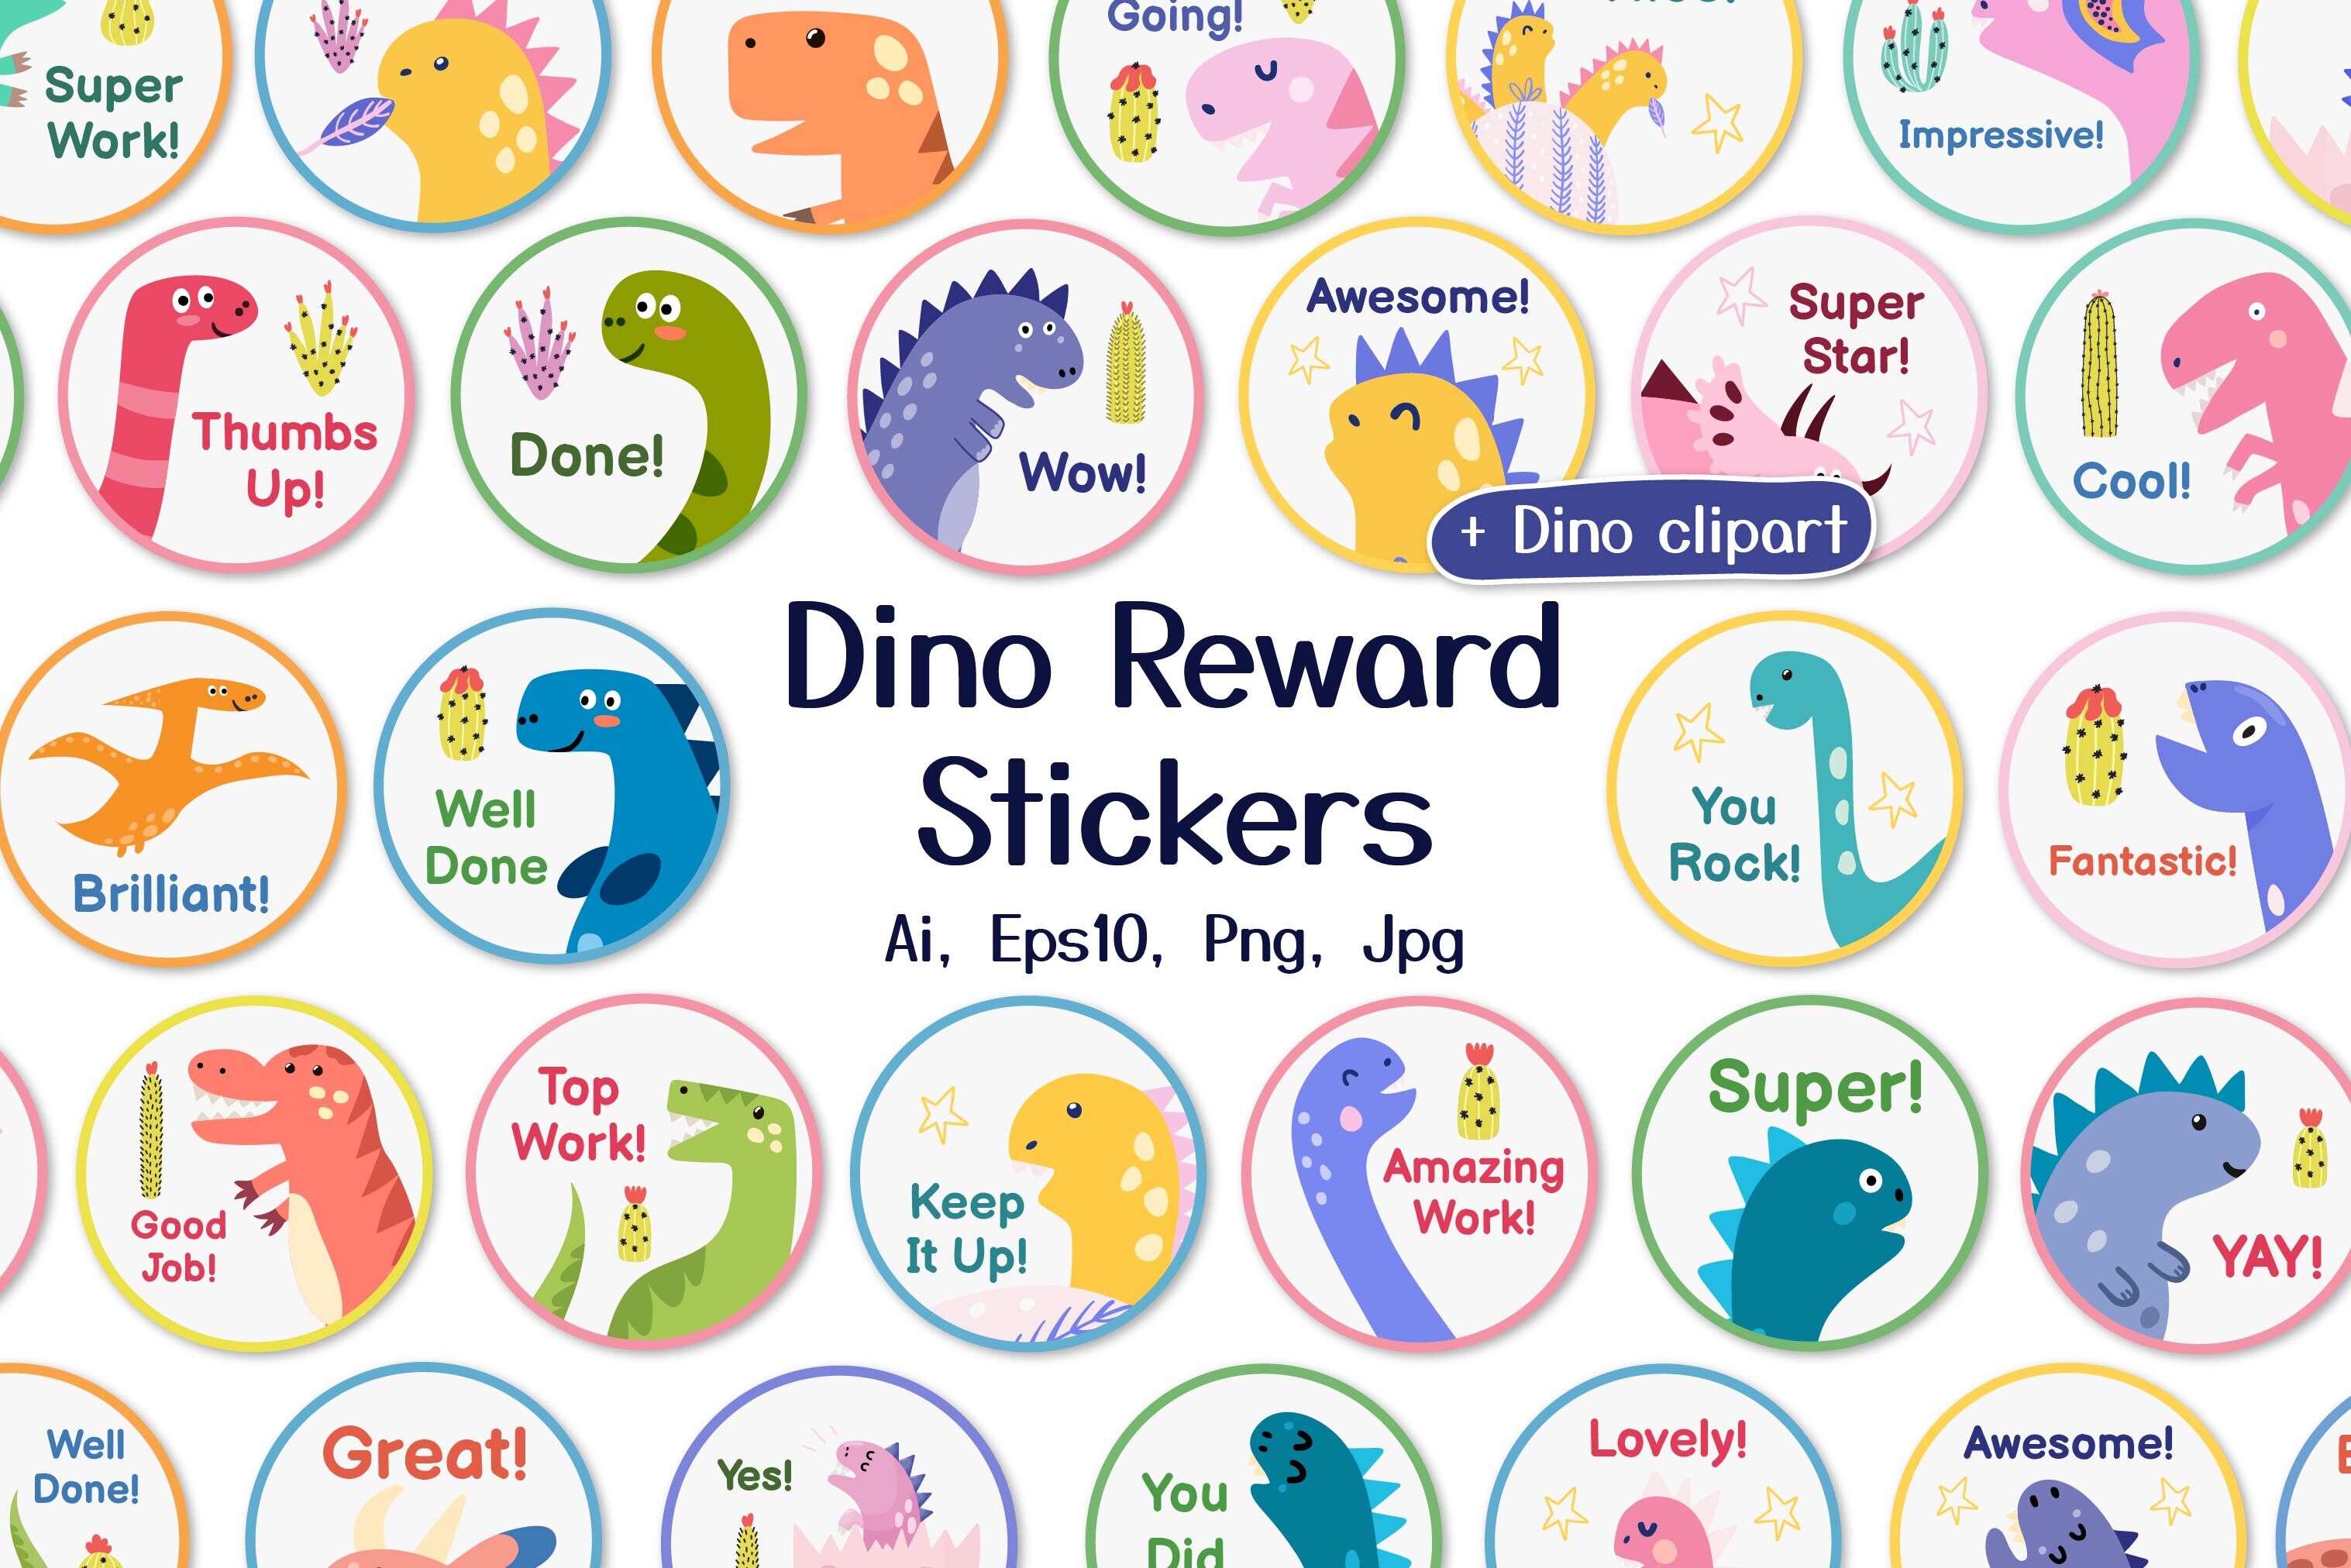 Cute Sticker Set PNG Image, Cute Printable Dinosaur Sticker Set Bundle  Illustration In Transparent Background, Free Sticker, Cute Sticker, Sticker  Free PNG Imag…